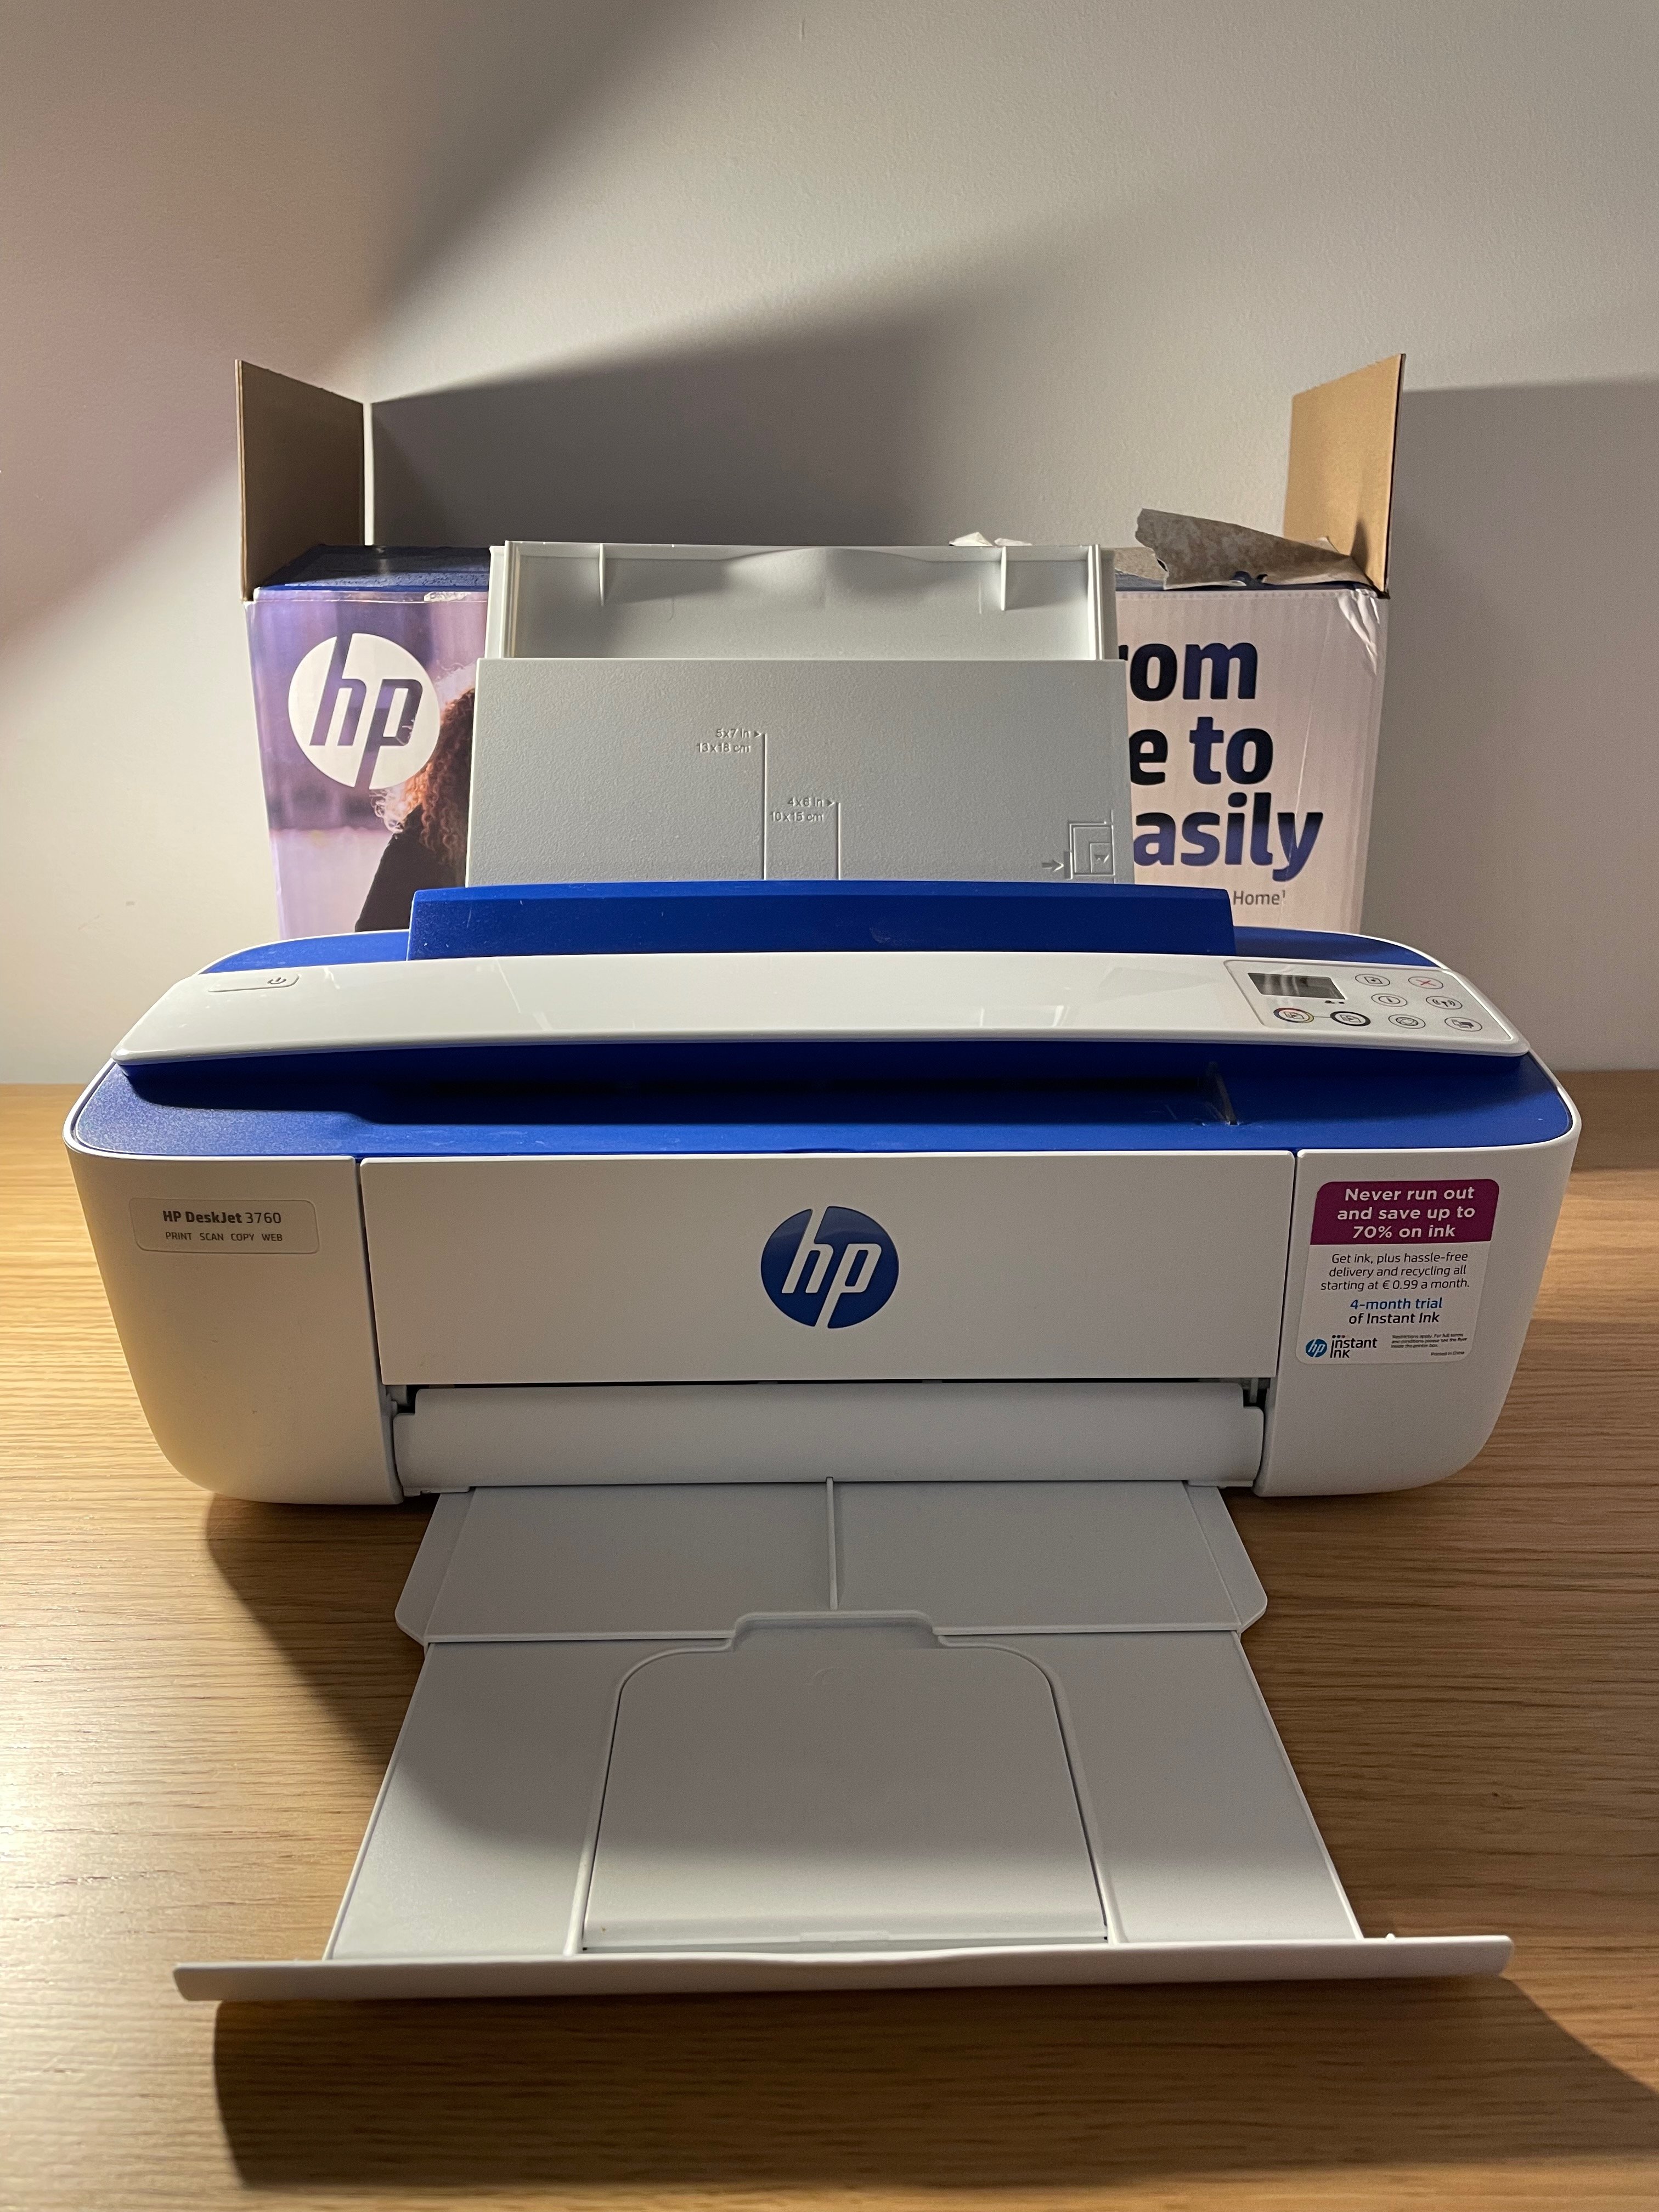 HP DeskJet 3760 All-in-One blue